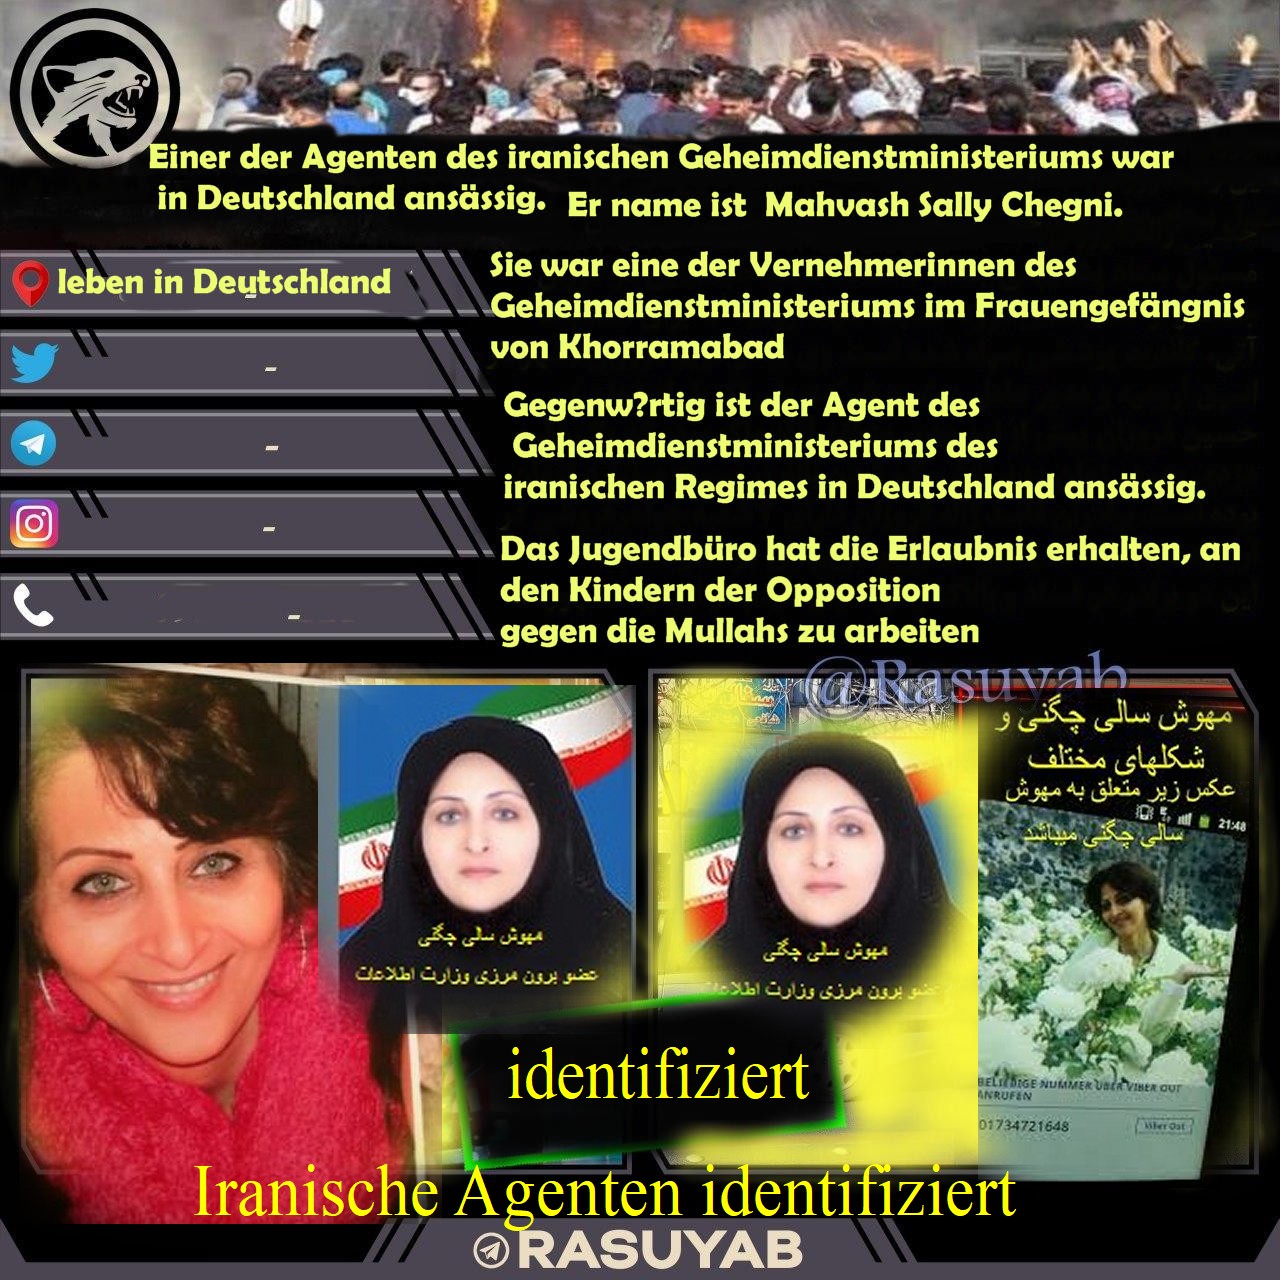 Iranische Agenten Mahvash Sali Chegeni in Deutschland identifiziert